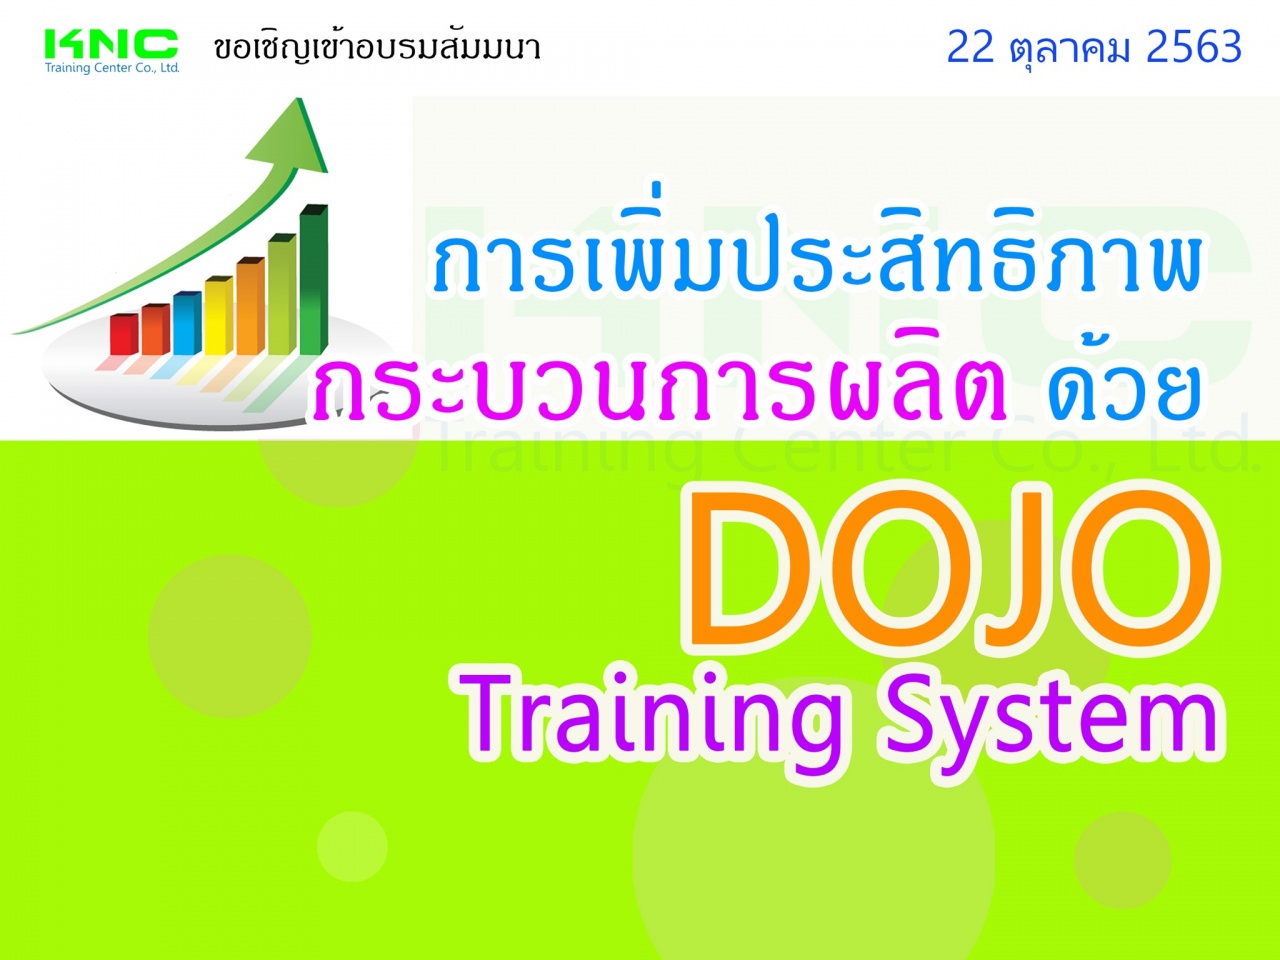 การเพิ่มประสิทธิภาพกระบวนการผลิตด้วย DOJO Training System